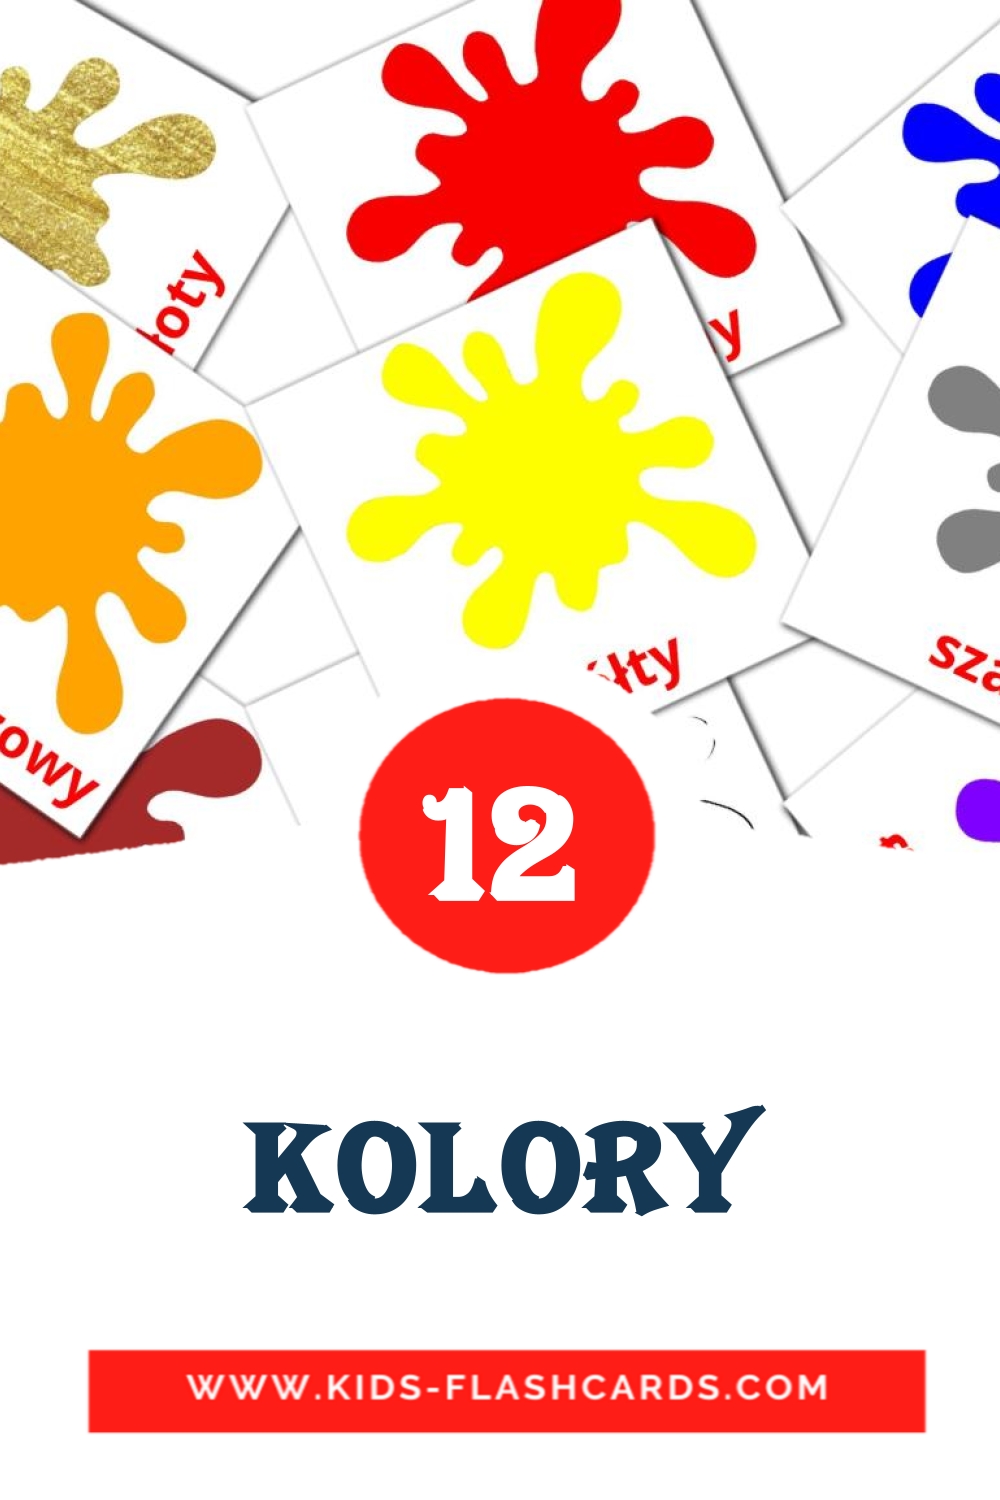 Kolory на польском для Детского Сада (12 карточек)